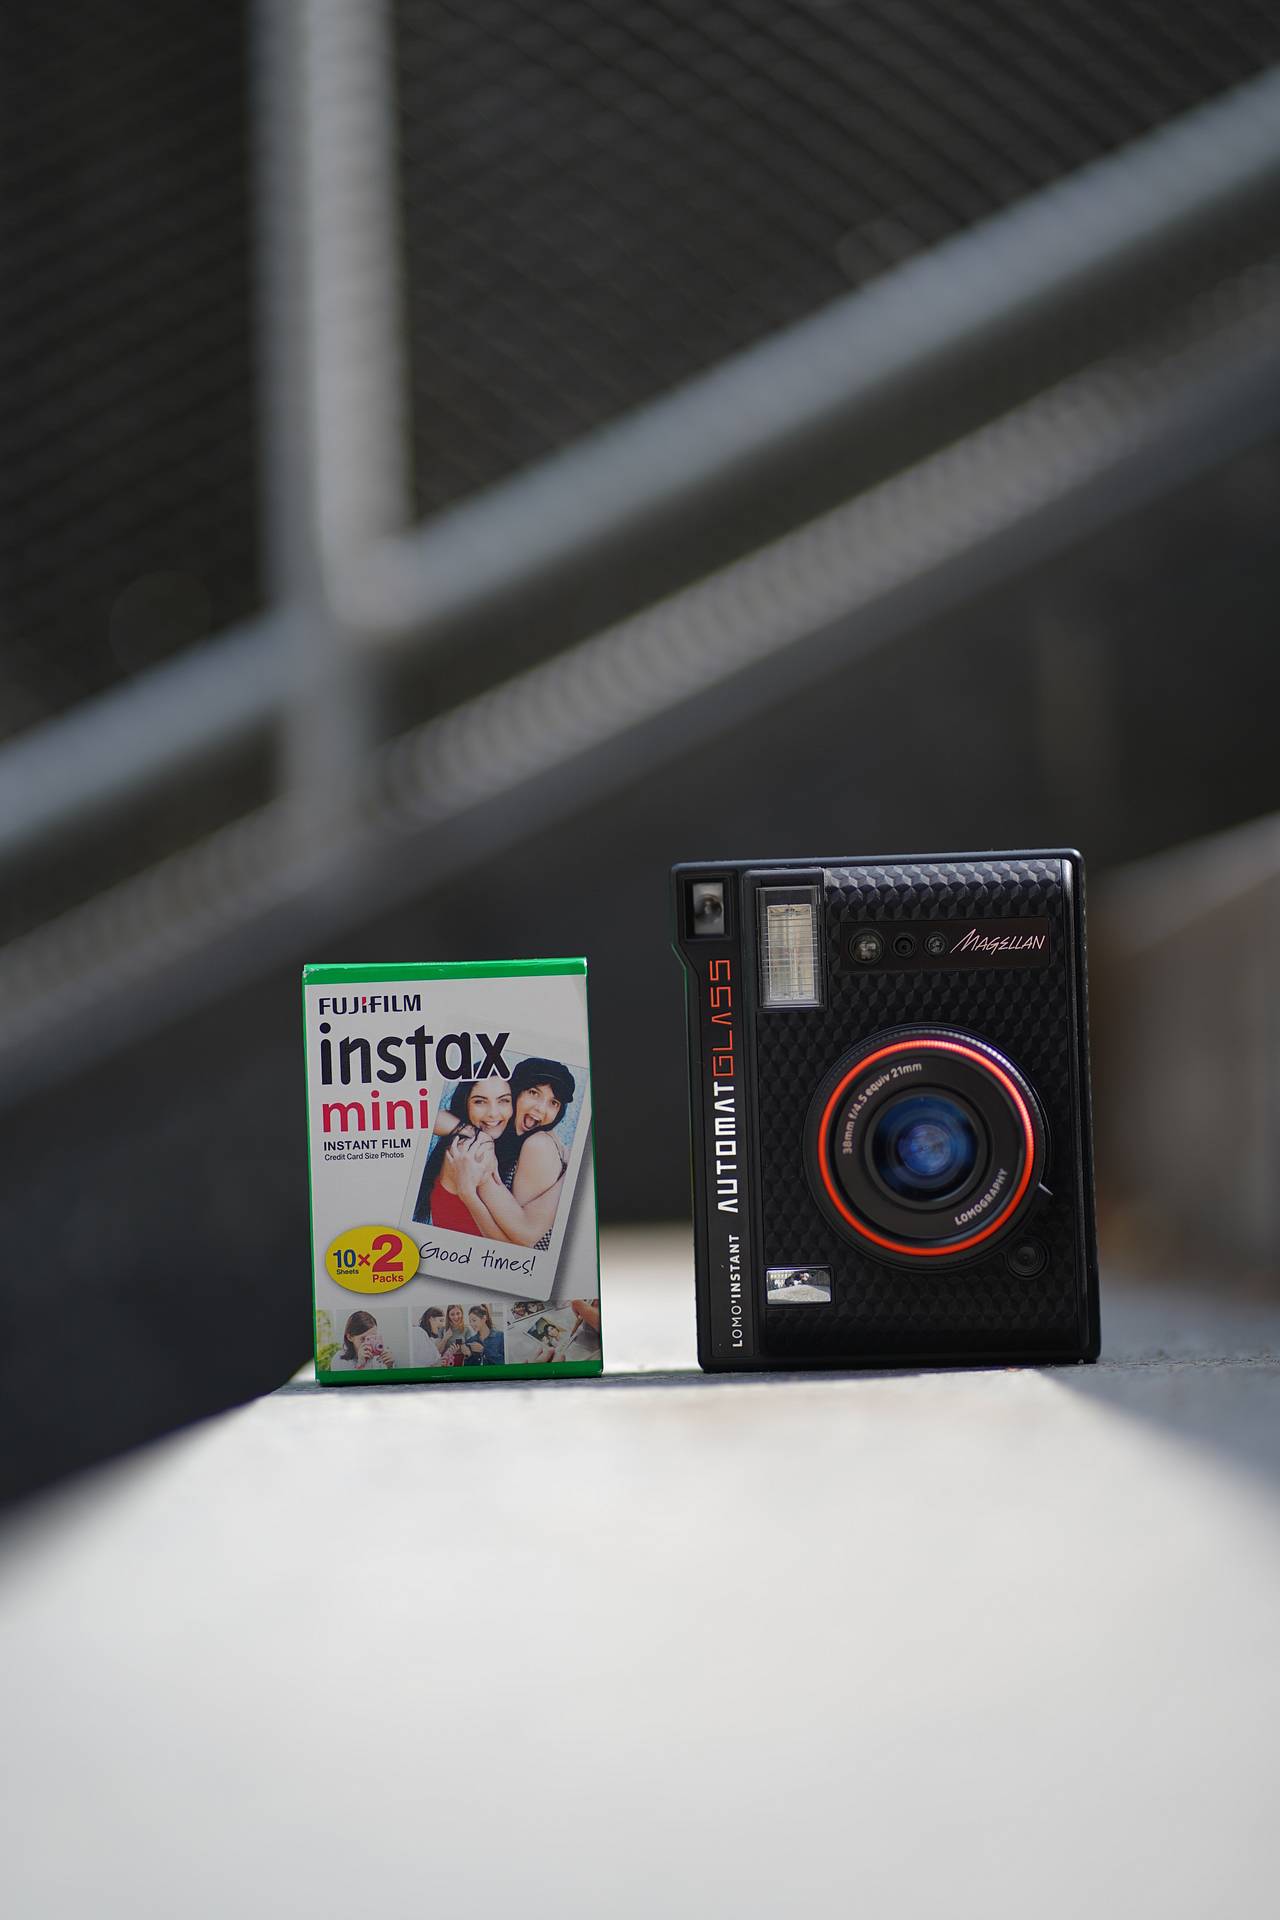 搭配 Fujifilm Instax Mini 拍立得相纸 使用市面上最普遍、最容易买到的相纸，非常方便。